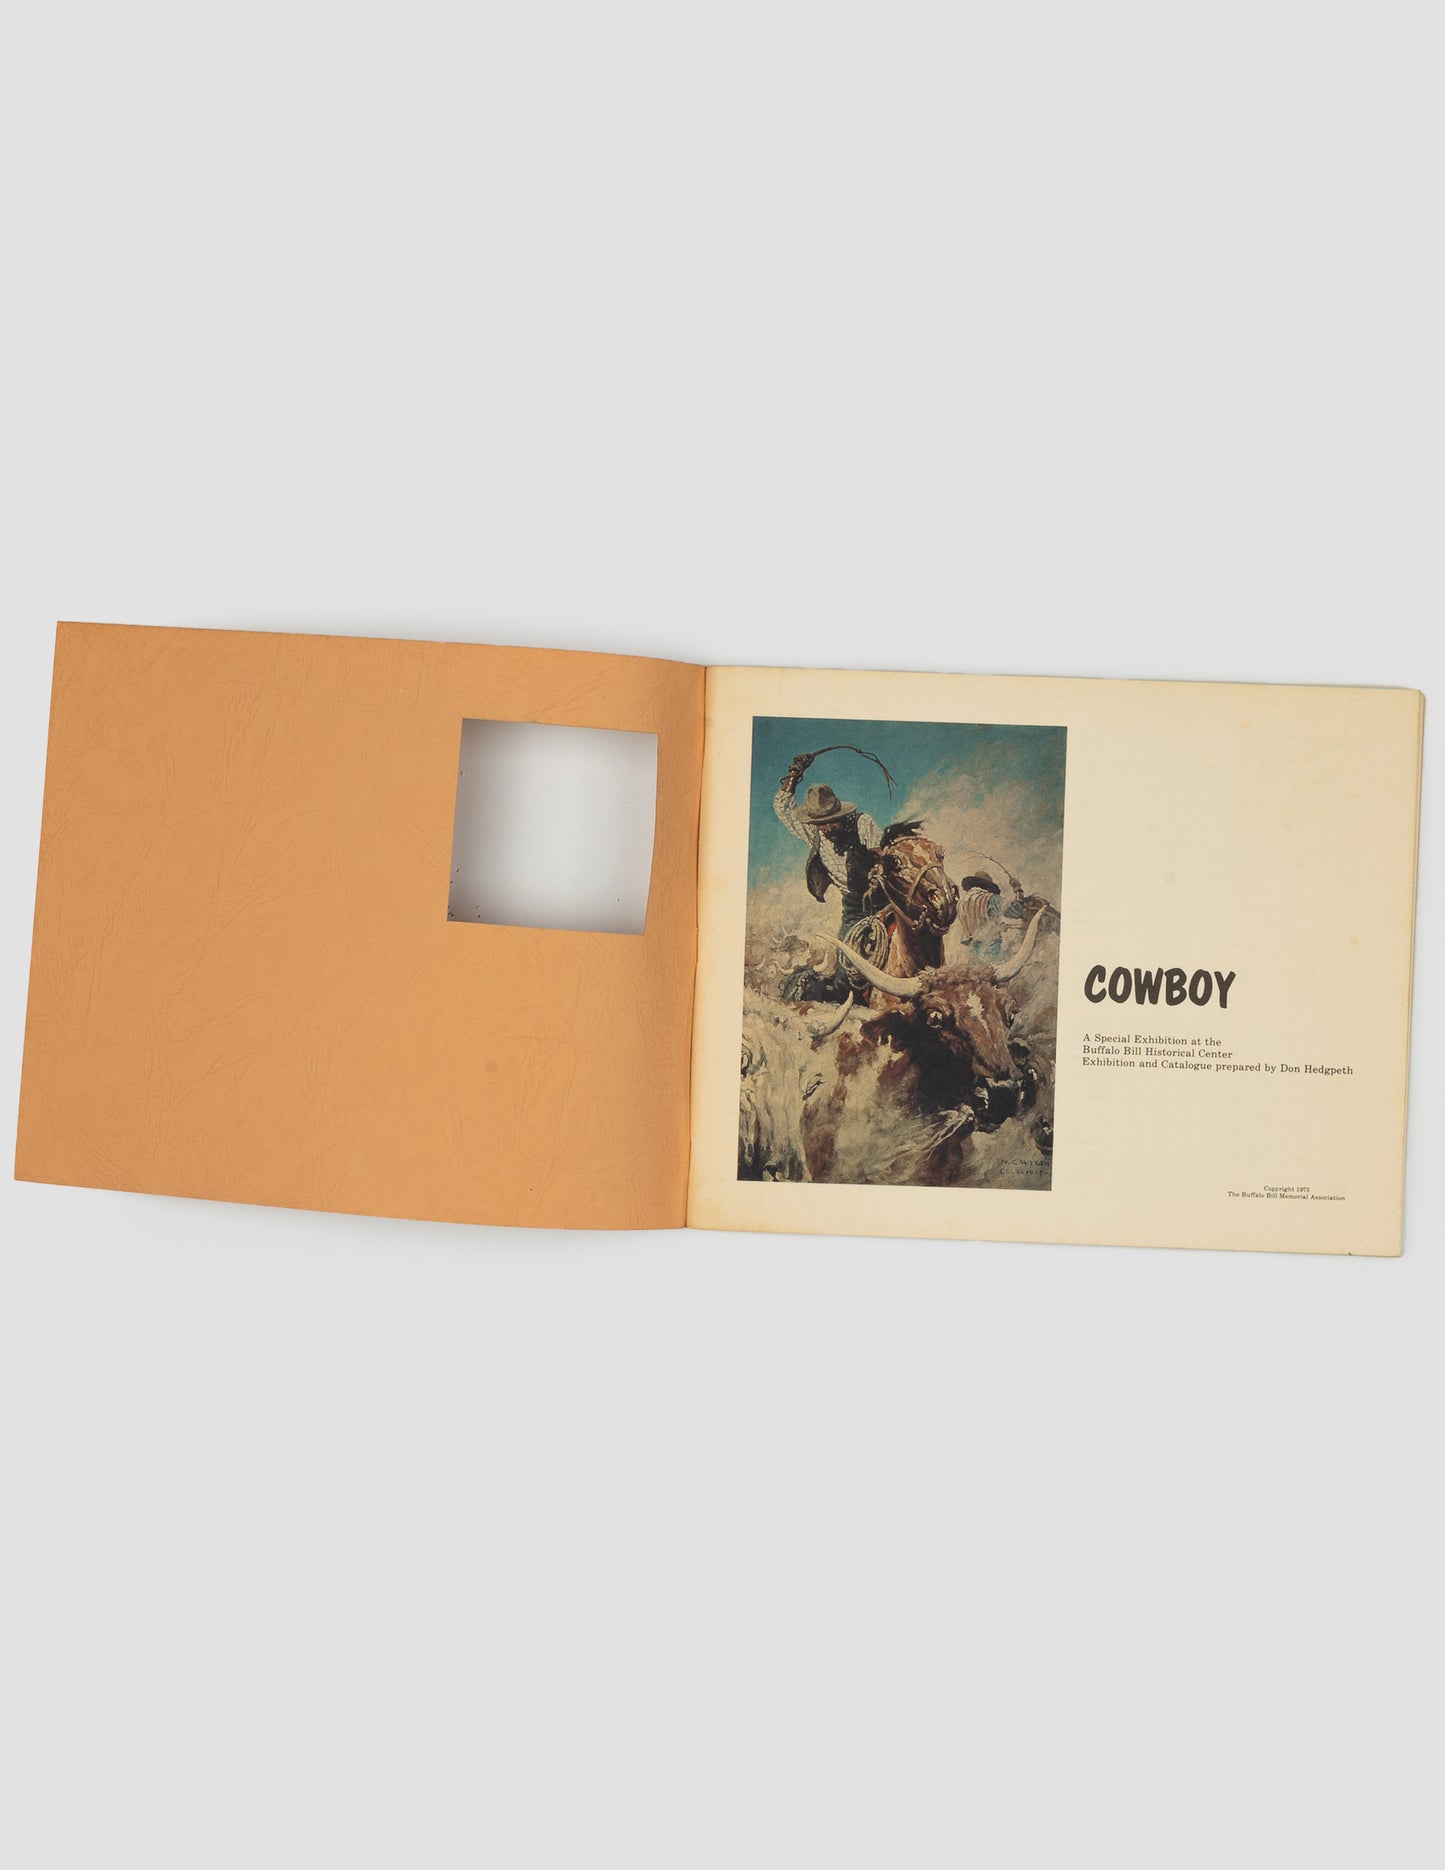 1975 "Cowboy" Special Exhibition Catalogue